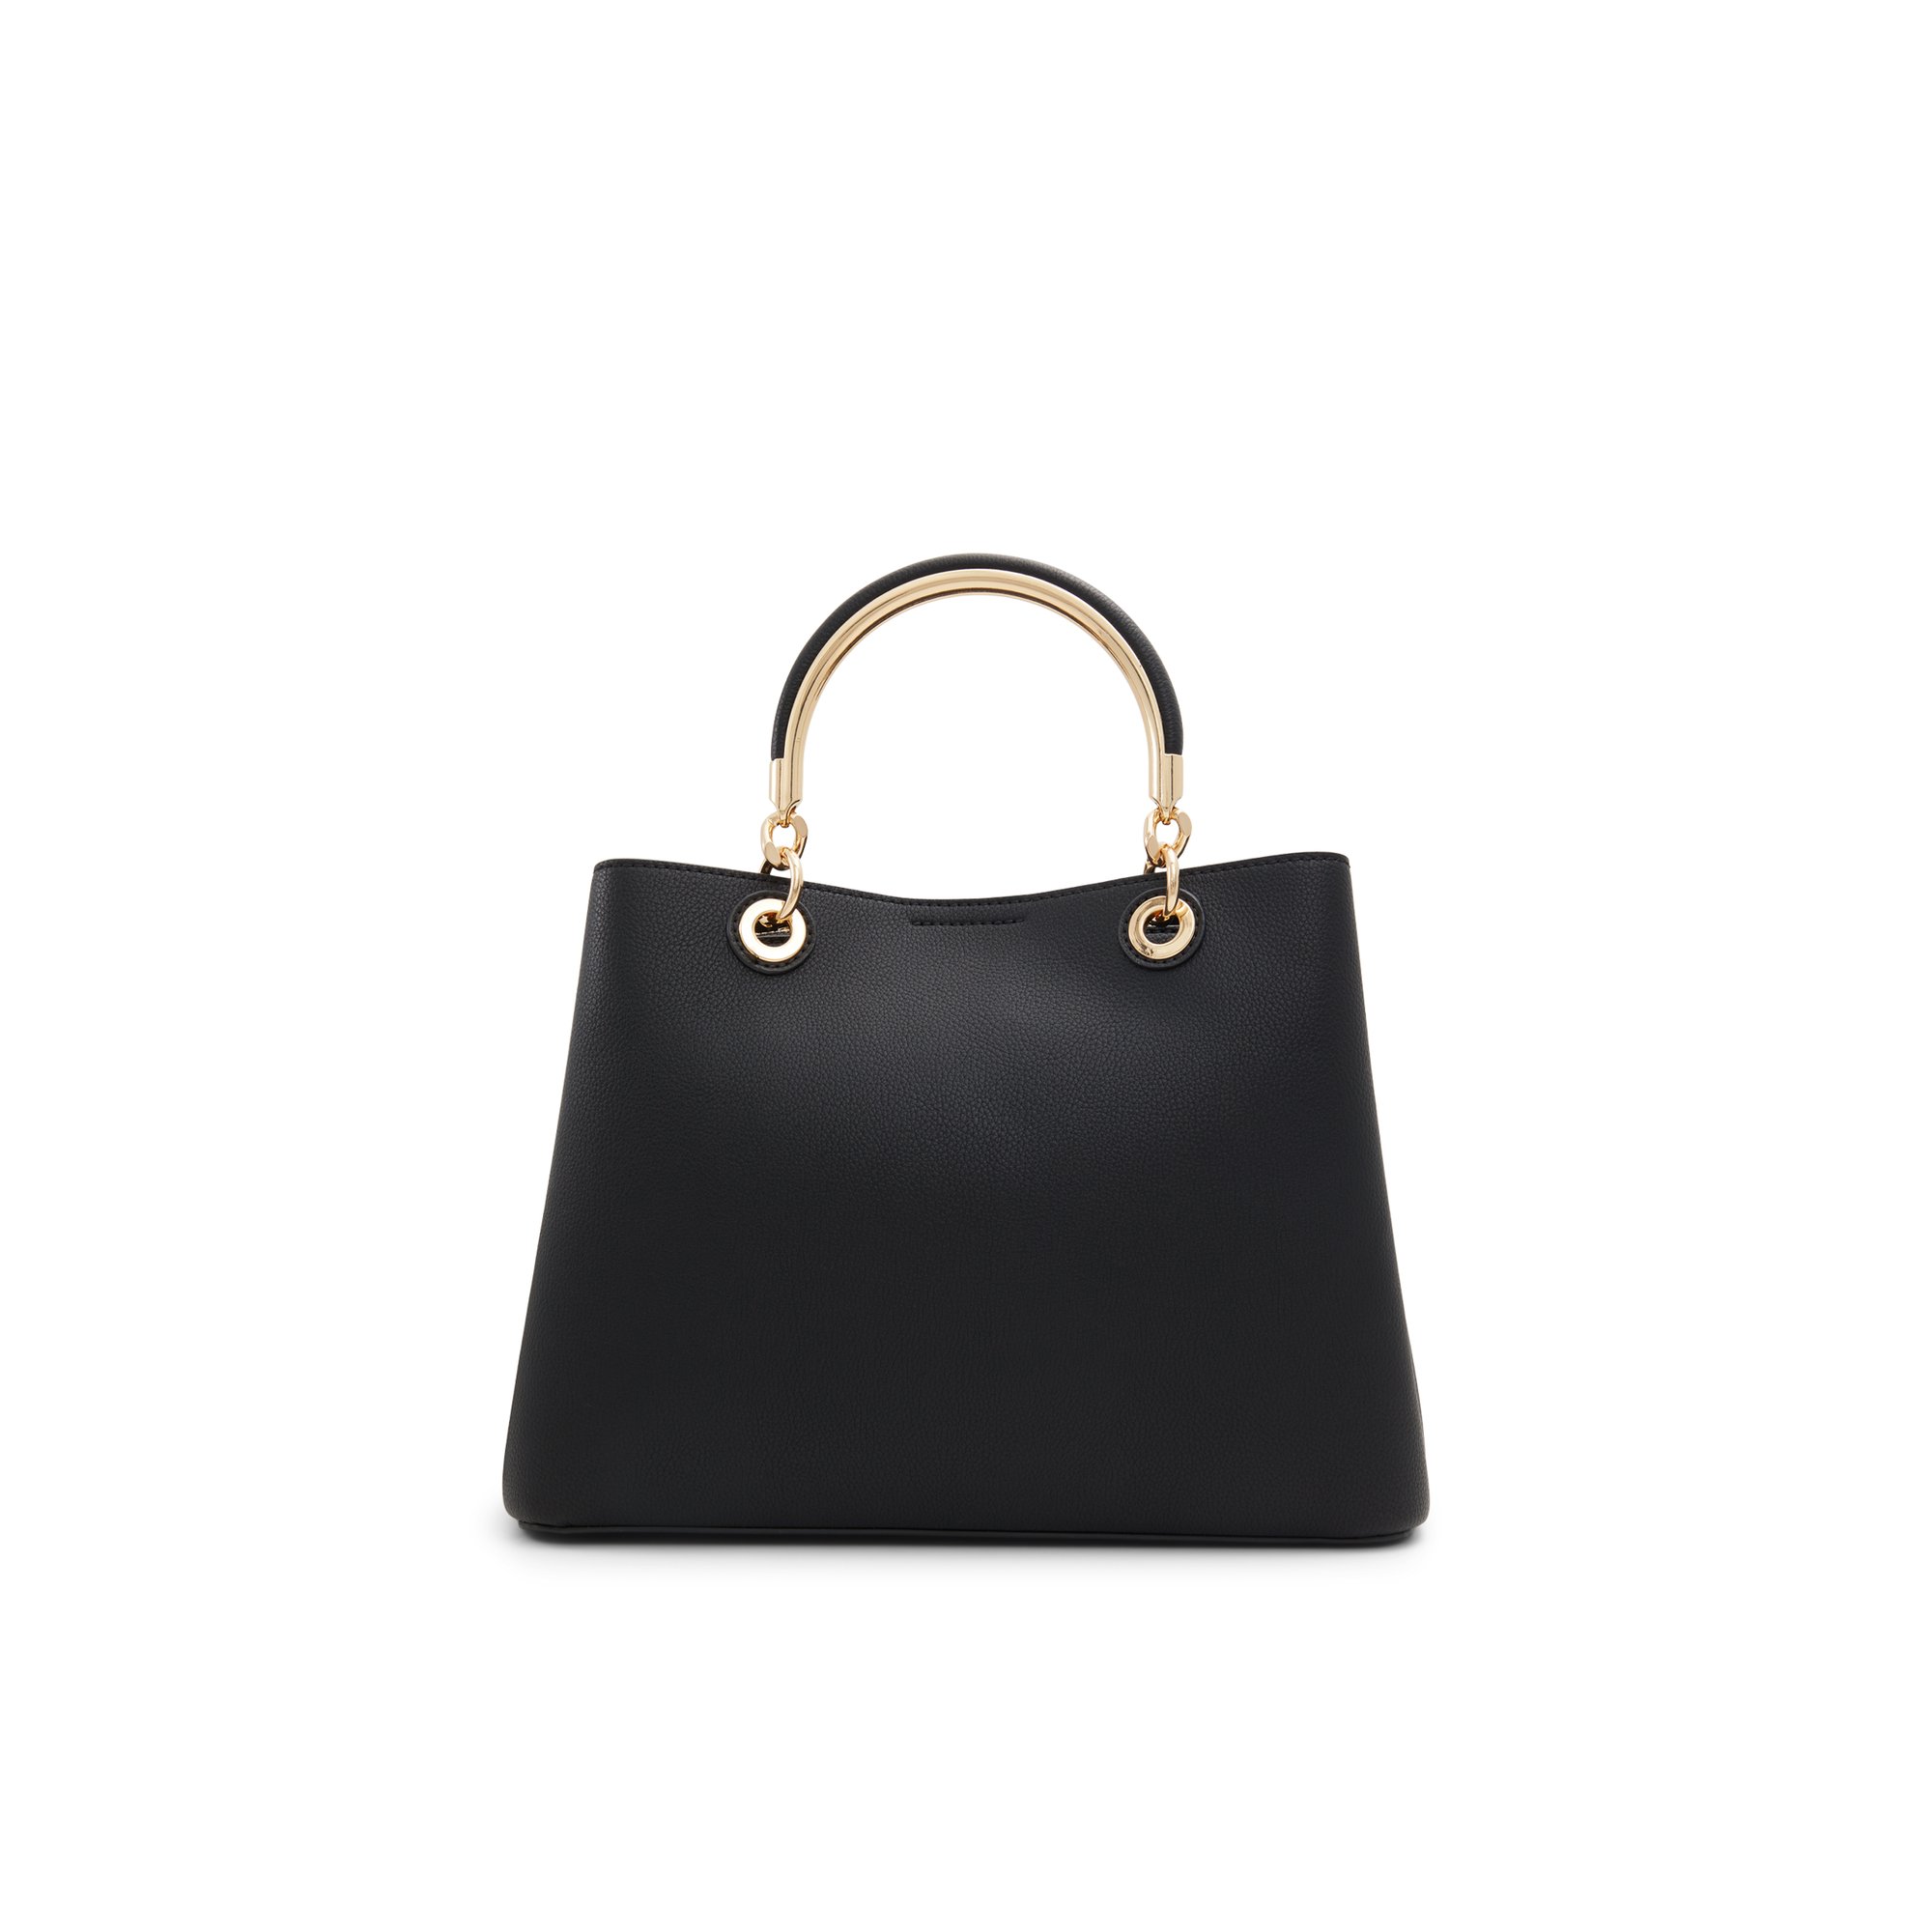 ALDO Surgoinee - Women's Handbags Totes - Black